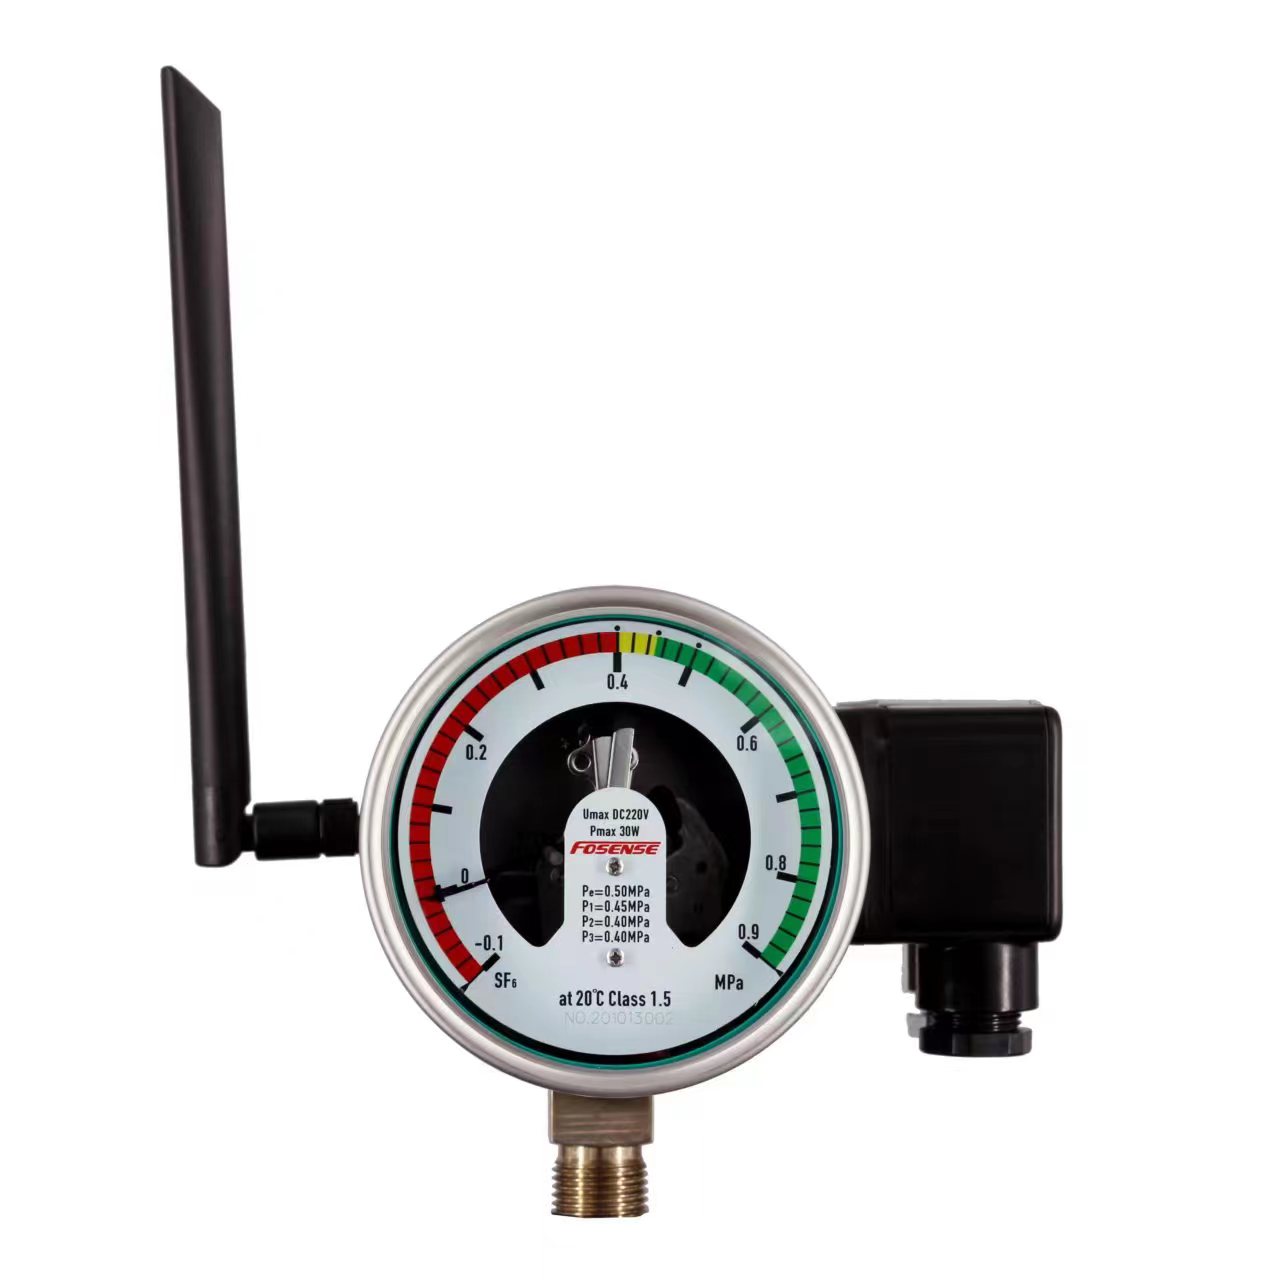 Выпуск нового продукта LoRa Wireless Remote Transmission Meter от нашей компании